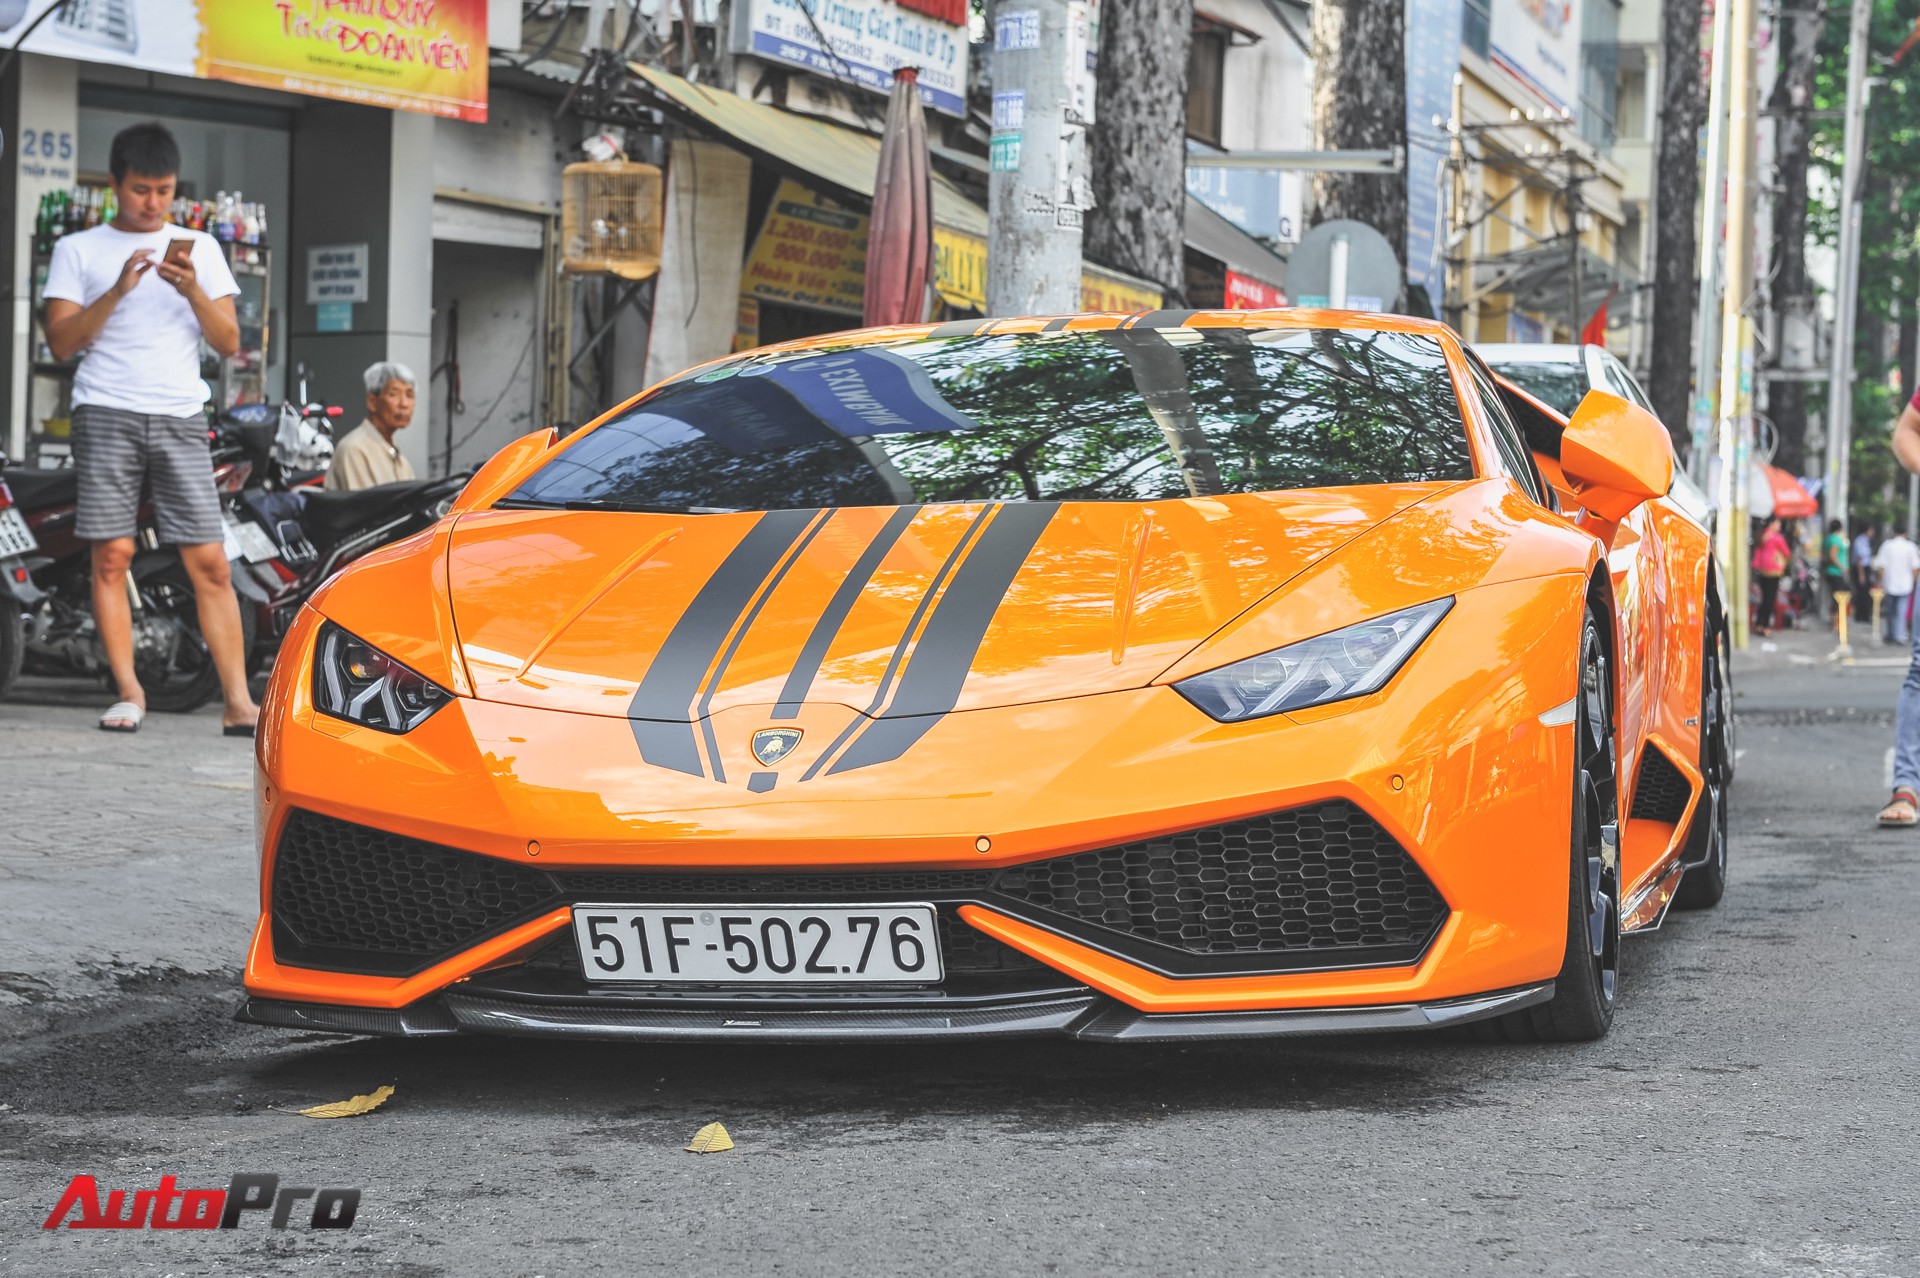 Sài Gòn là thủ đô của siêu xe, nơi mà bạn có thể tìm thấy những chiếc xe đẳng cấp hàng đầu thế giới. Với nhiều mẫu xe sang trọng và đầy sức mạnh, bạn sẽ có cơ hội trải nghiệm những chuyến đi tuyệt vời và cảm nhận được sự giàu có của thành phố Sài Gòn.